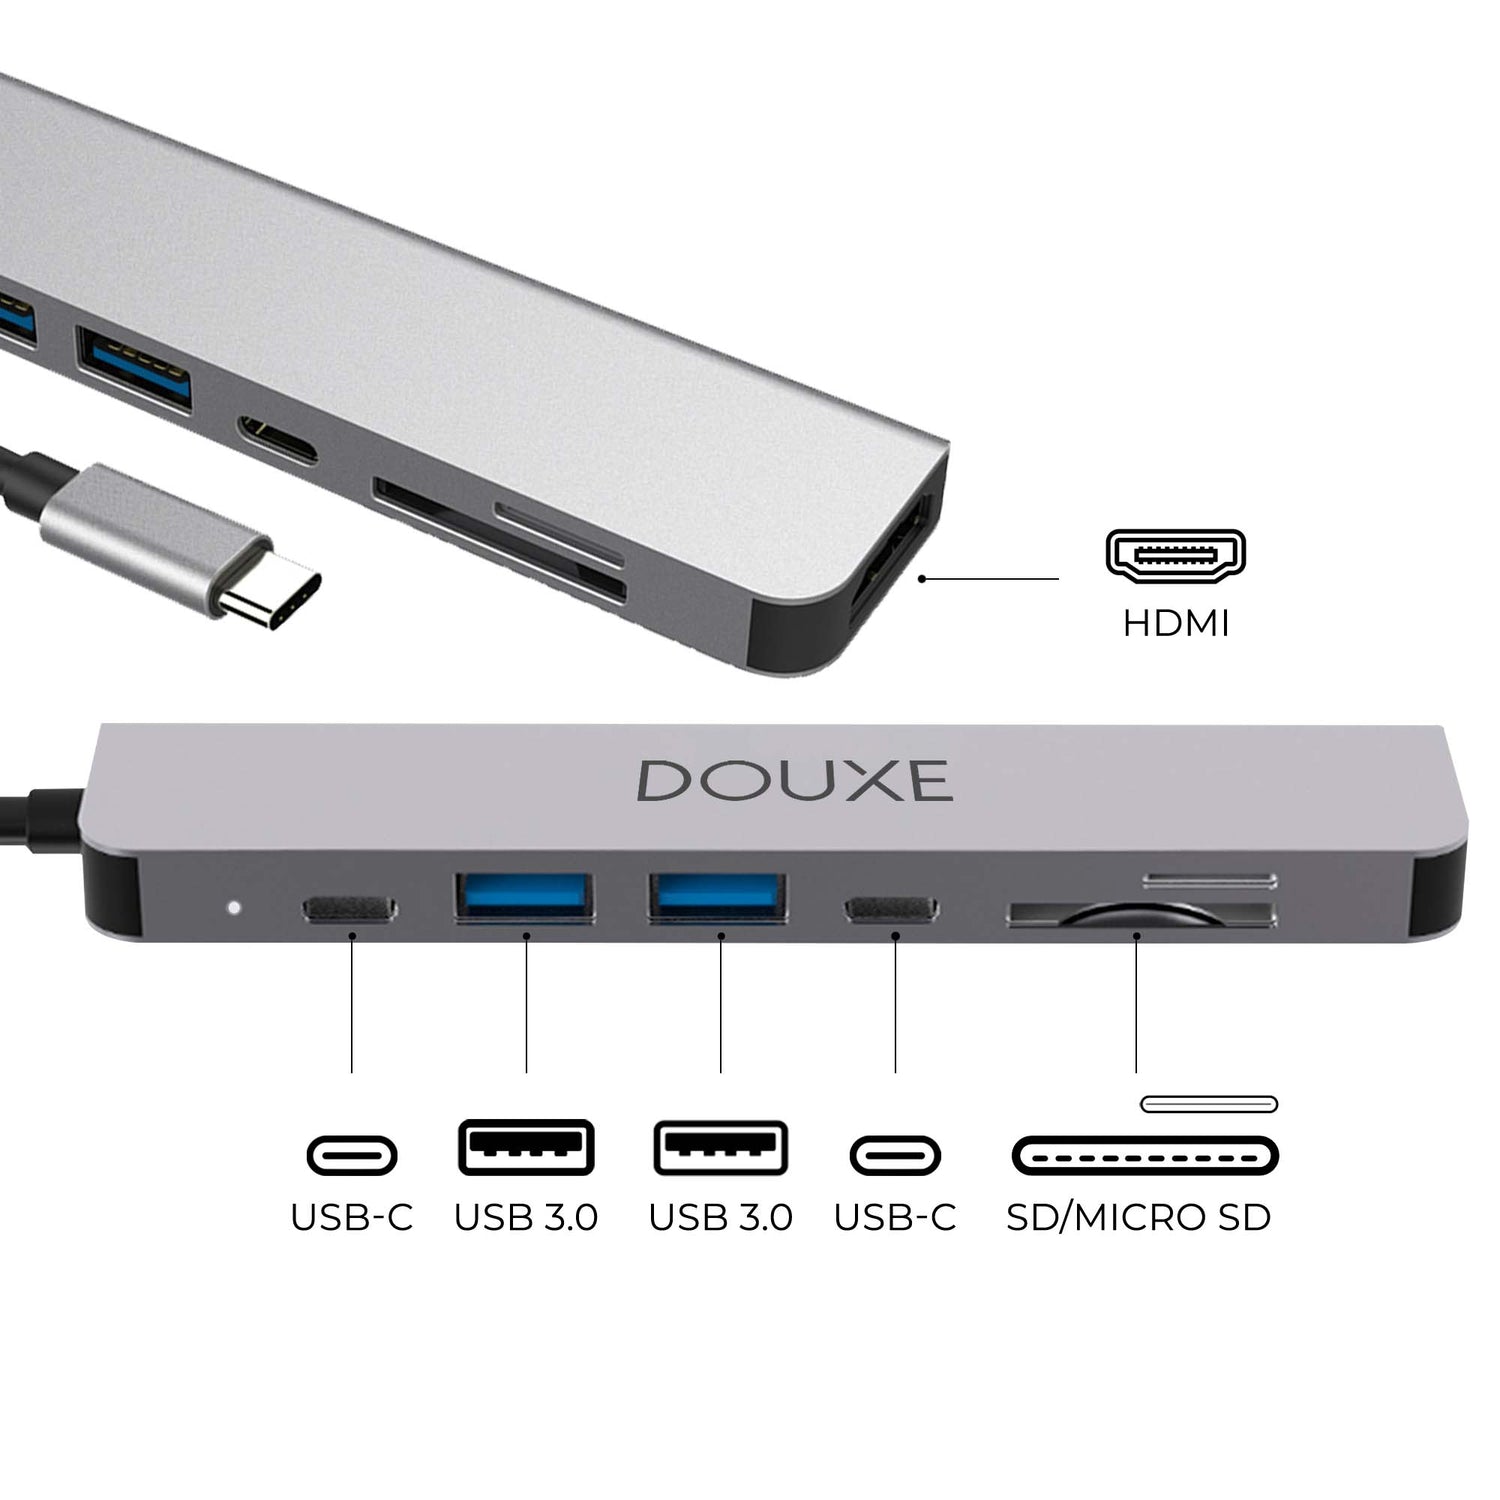 Compabiliteit van de Douxe I7 - 7 in 1 usb-c hub voor laptops